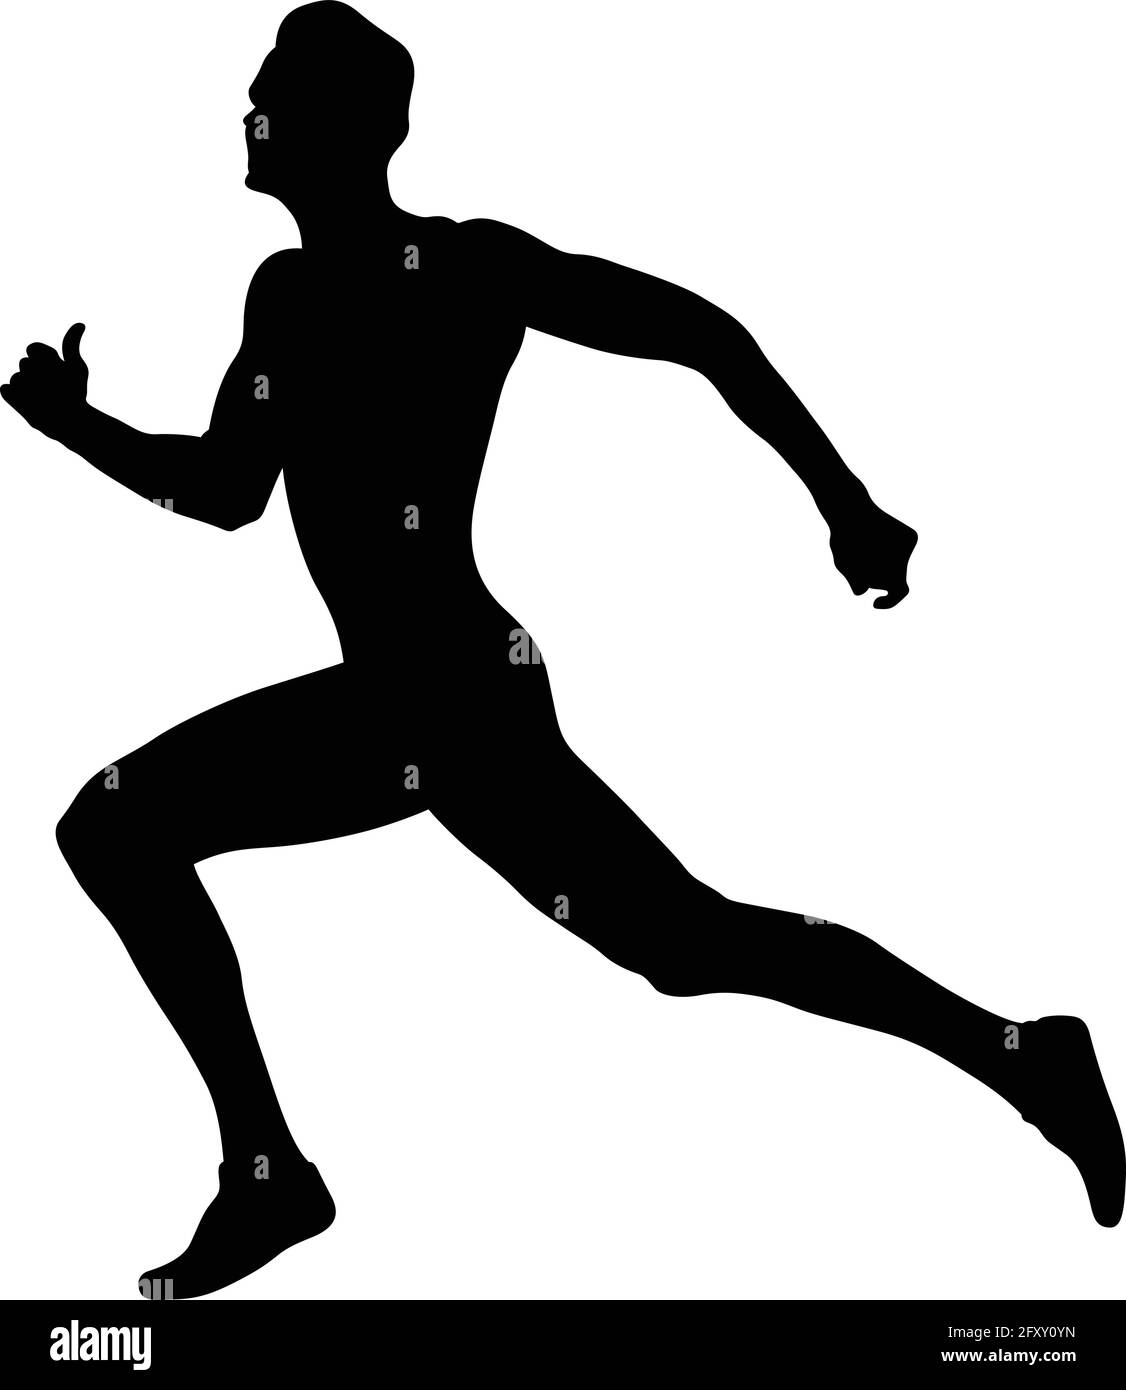 atleta corredor hombre carrera en la línea de meta silueta negra Ilustración del Vector